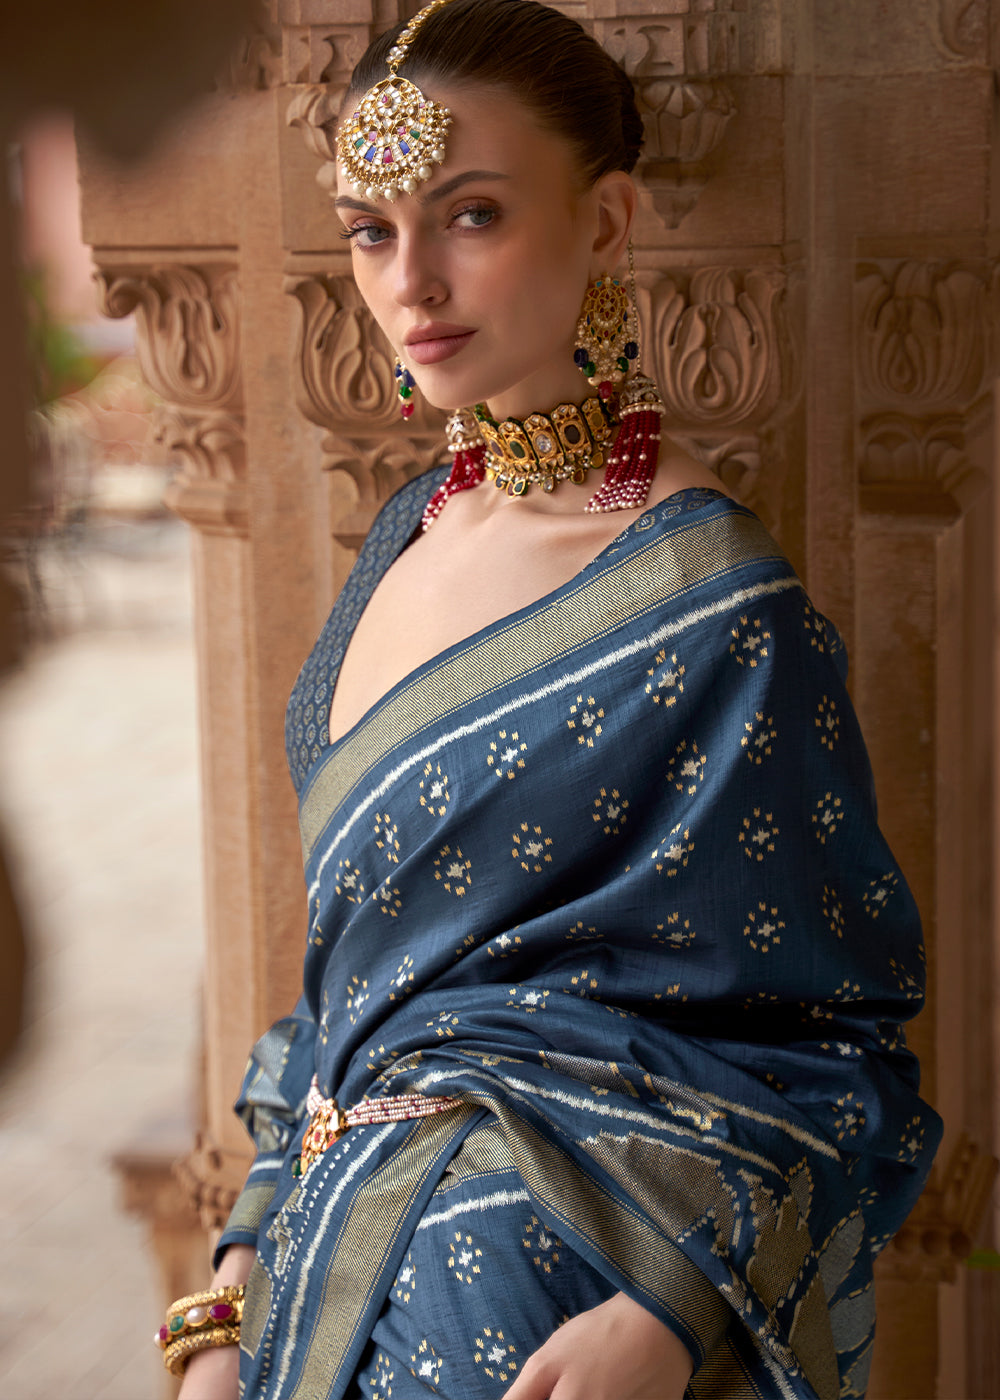 Indigo Dye Blue Zari Woven Soft Banarasi Silk Saree